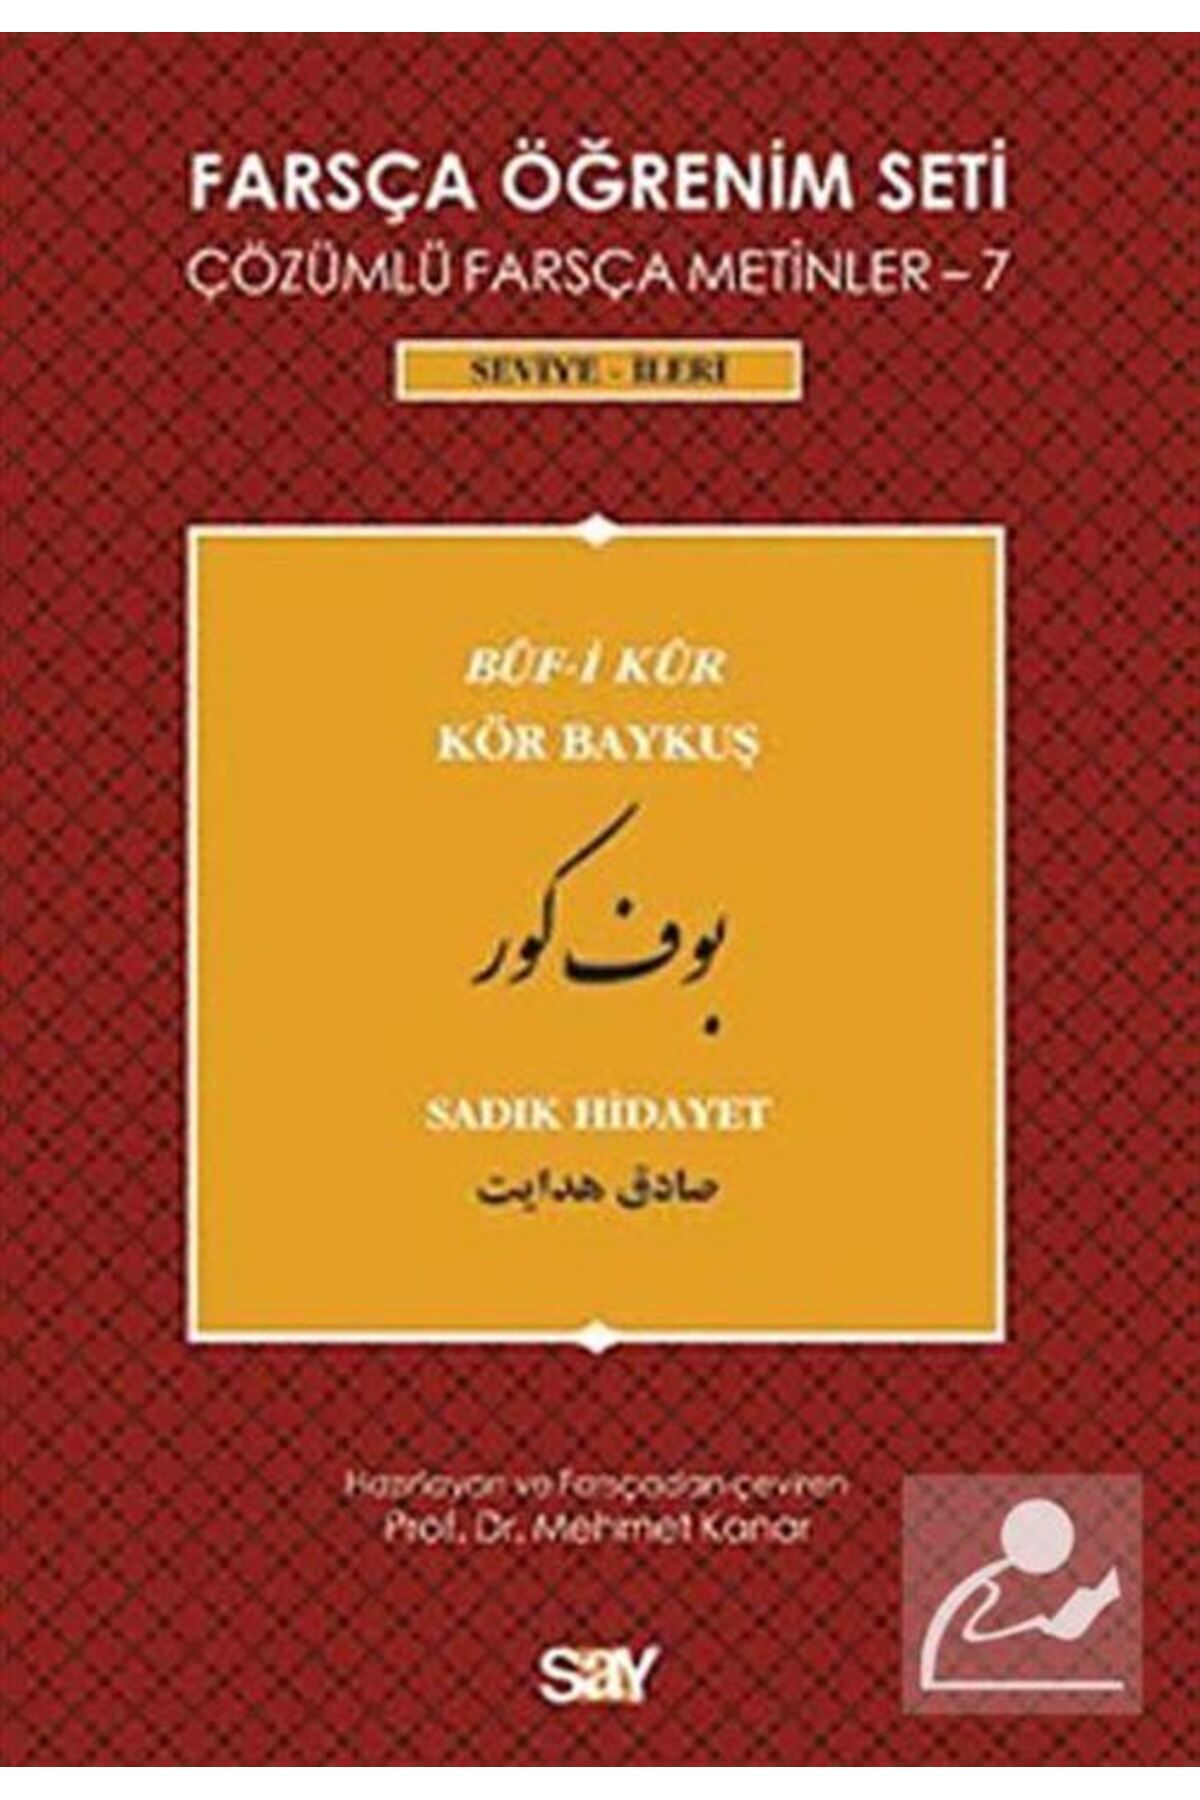 Say Yayınları Farsça Öğrenim Seti 7 (SEVİYE İLERİ) & Çözümlü Farsça Metinler